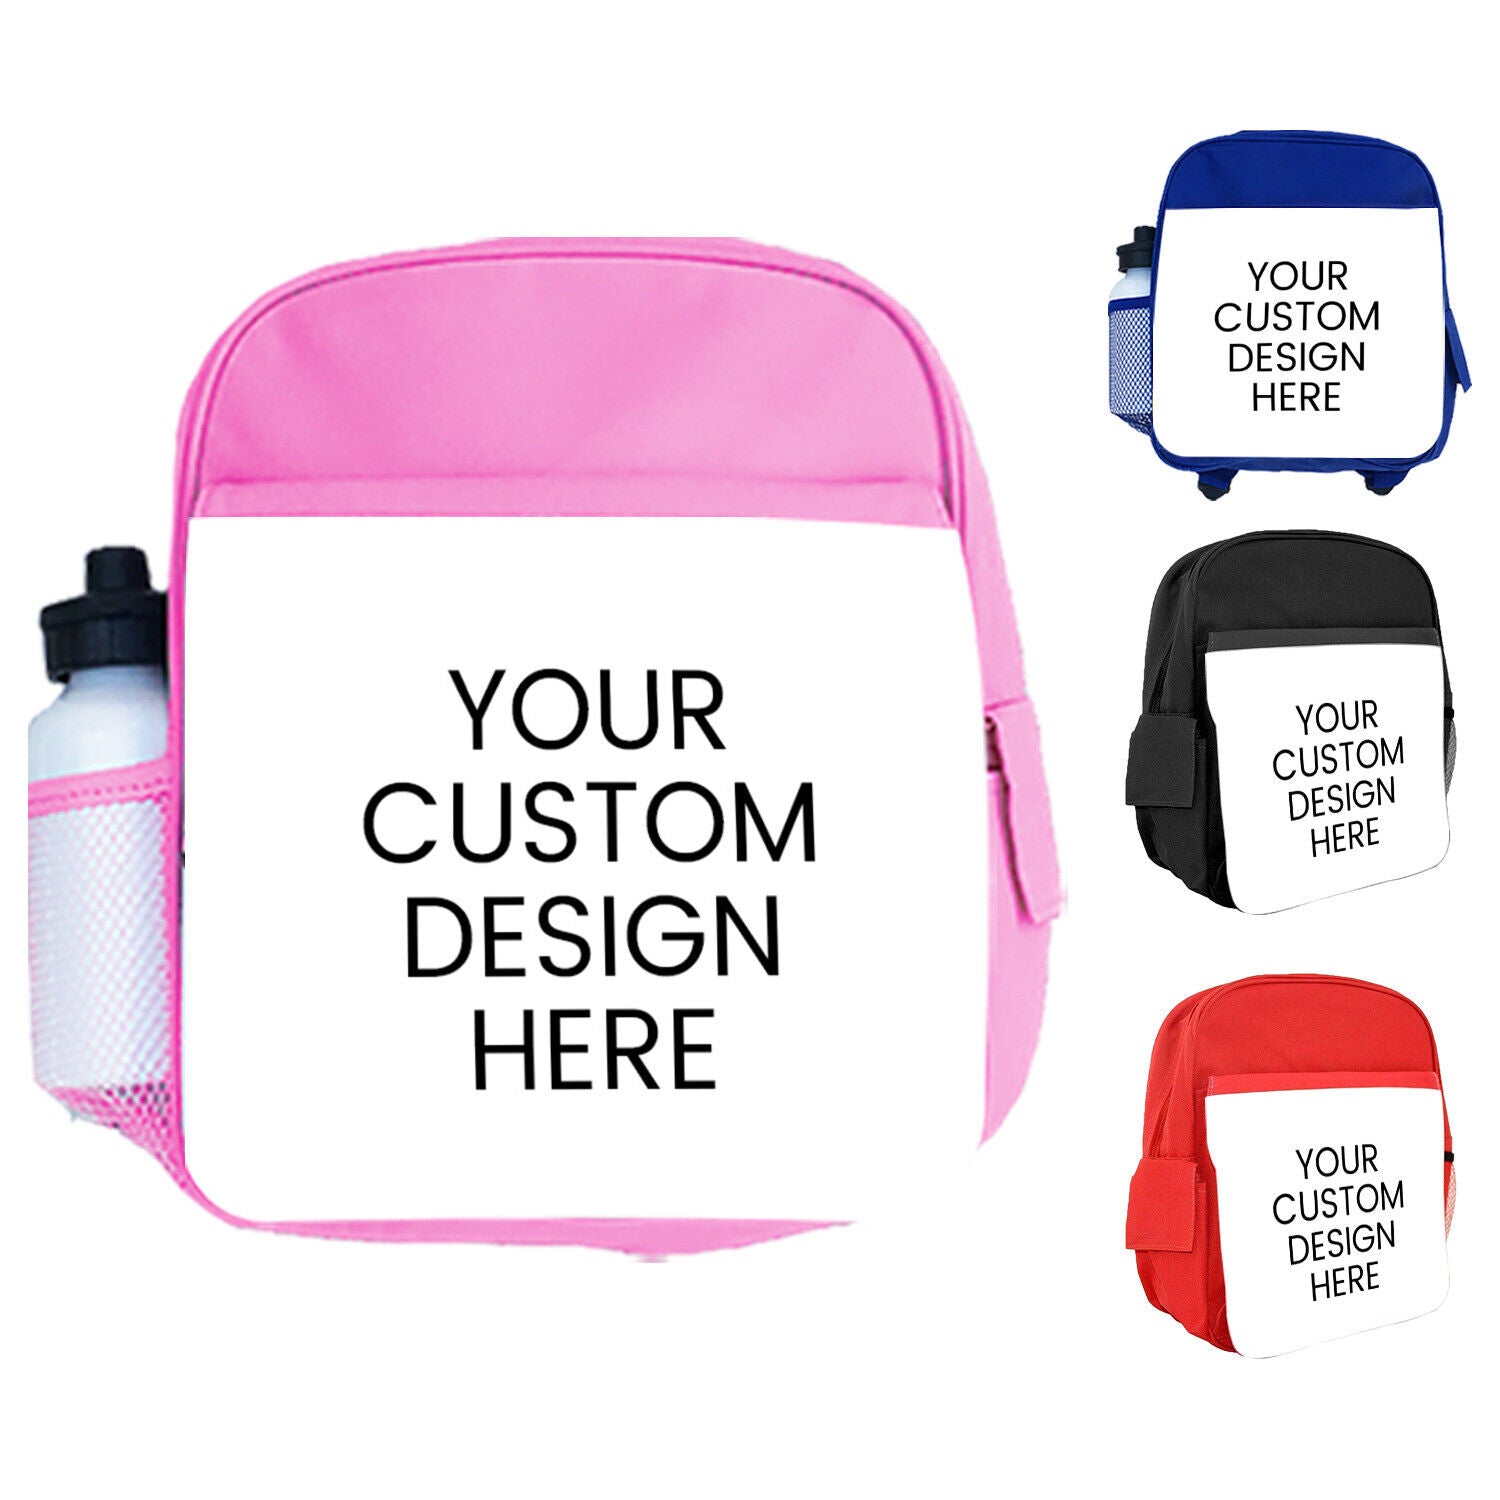 Personalised Kids Backpack Any Name Generic Design Boys Girls kid School Bag 44